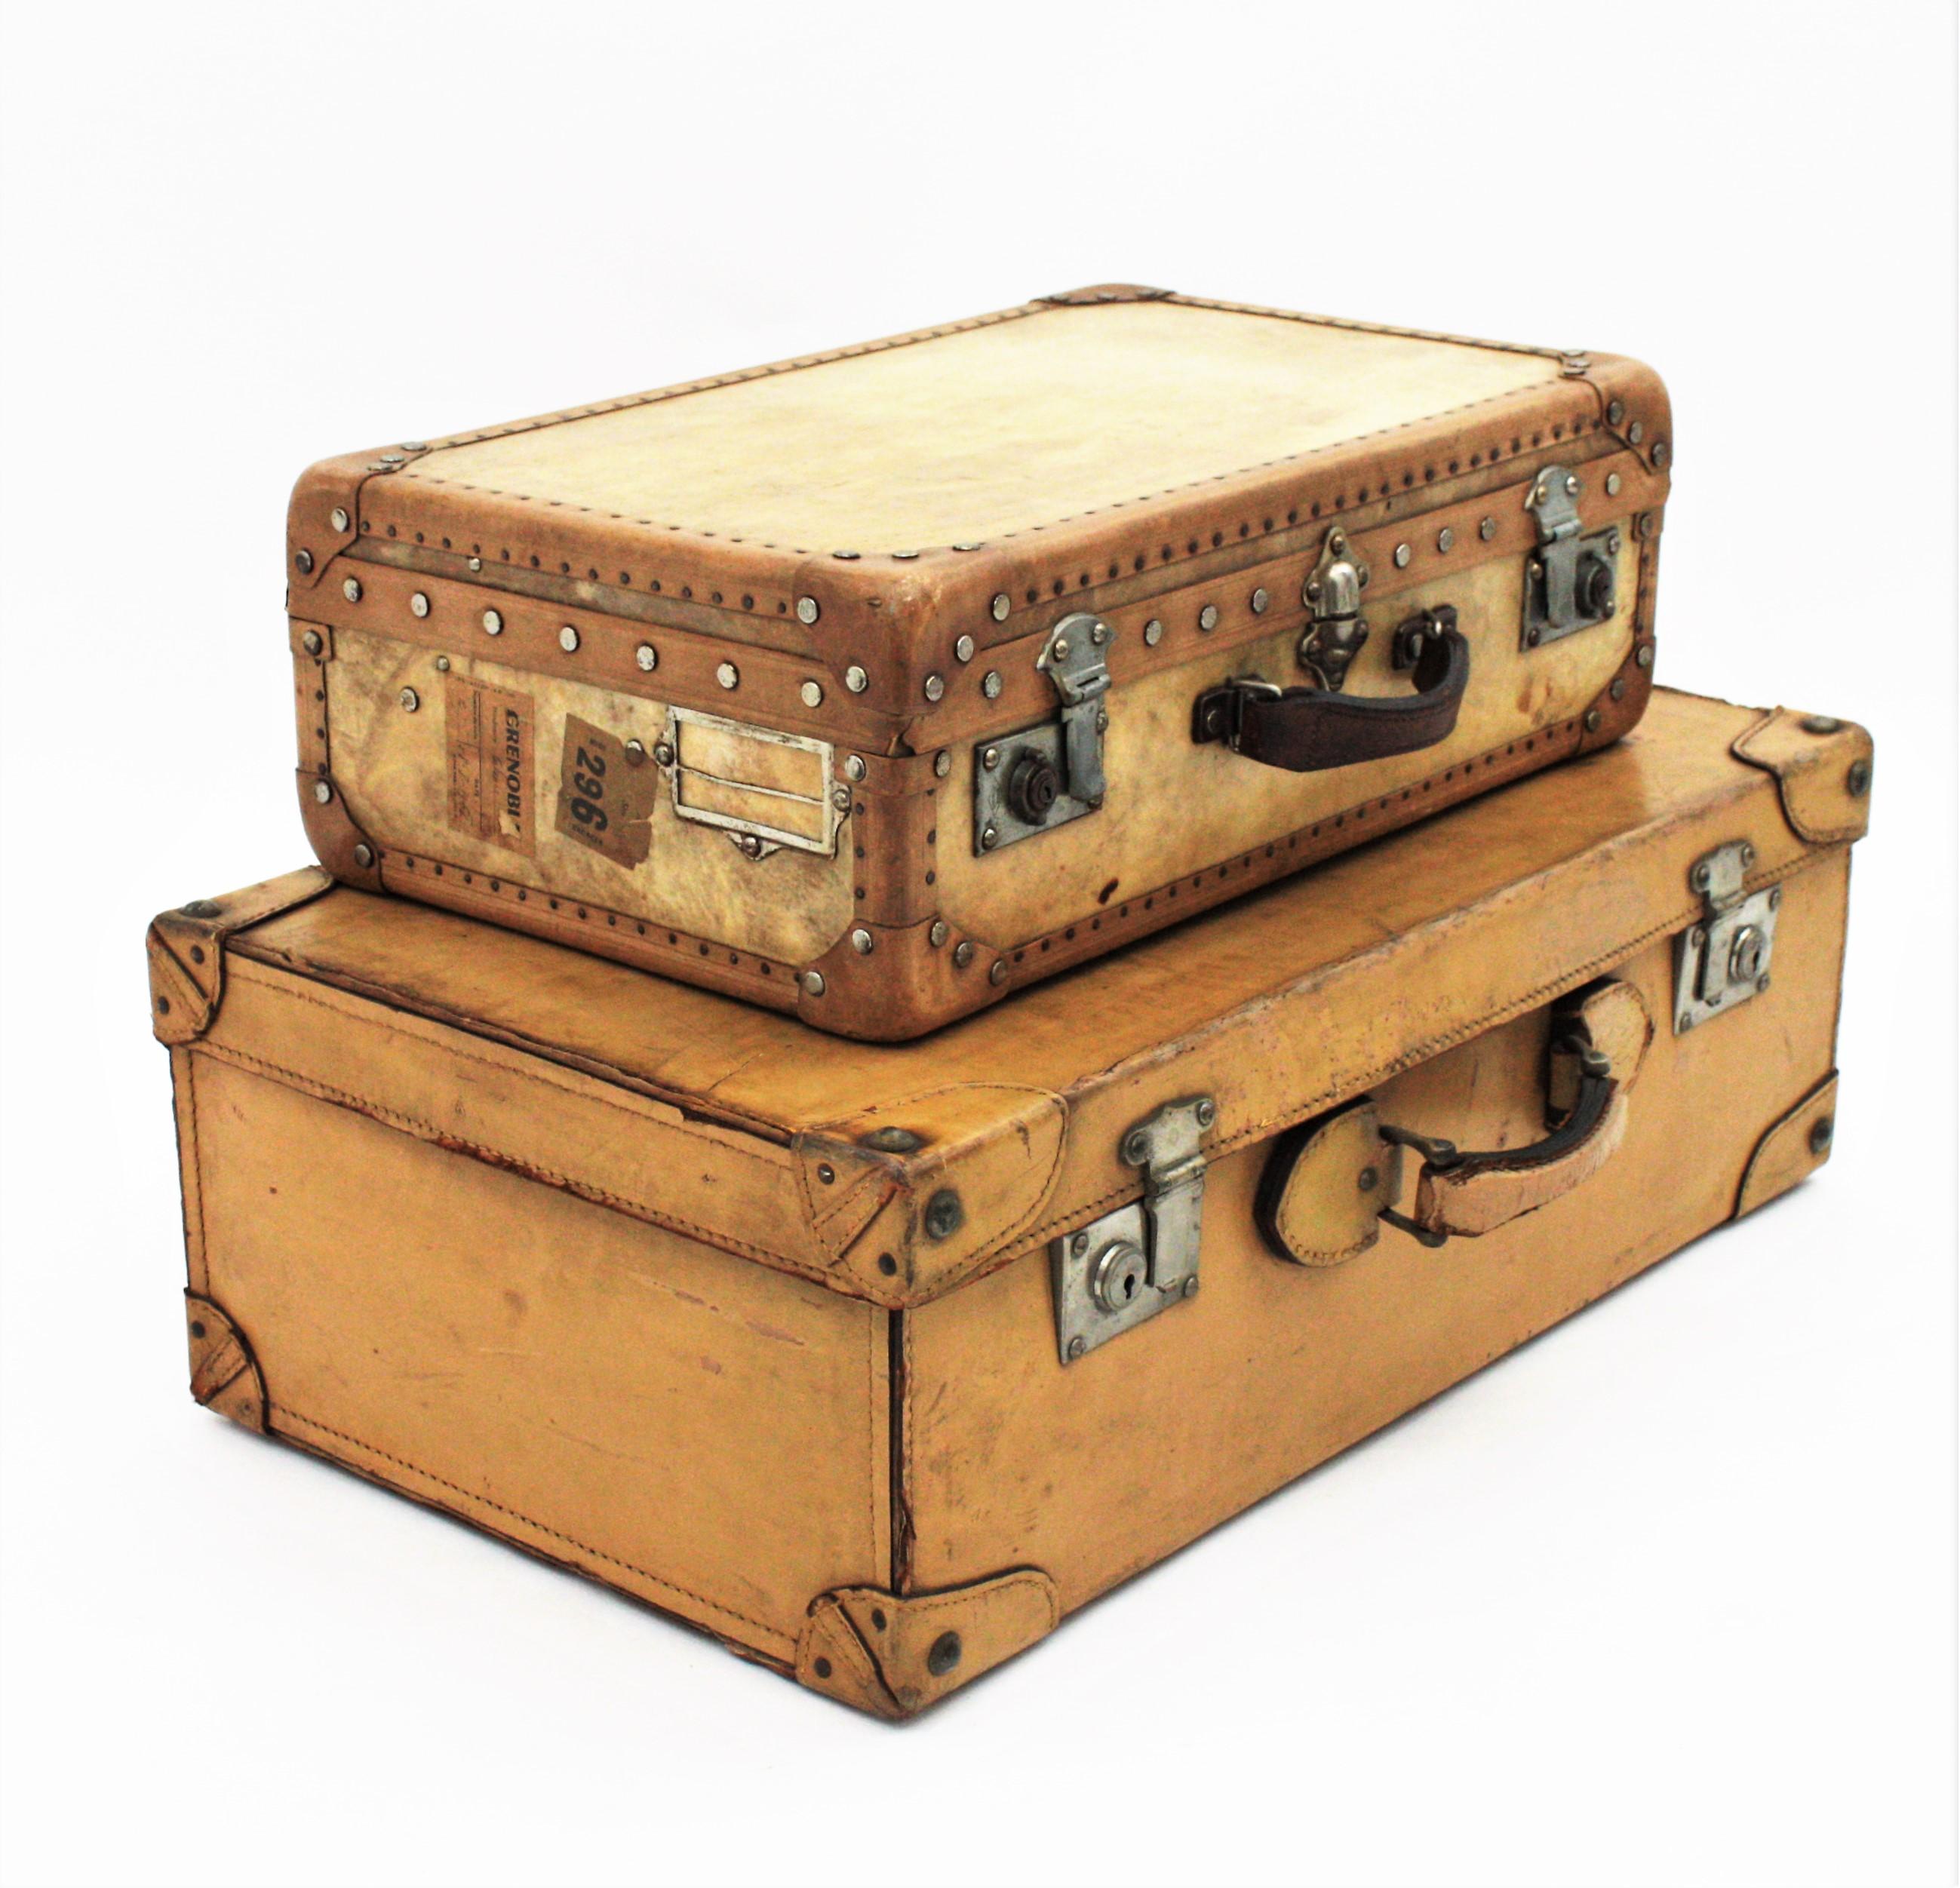 Schönes Set aus zwei Koffern aus cremefarbenem Leder und Pergament, Frankreich, 1930er-1940er Jahre.
Metallschlösser und -nieten und Ledergriffe.
Das kleine Exemplar ist aus Vellum gefertigt.
Der große ist in beige/cremefarbenem Leder